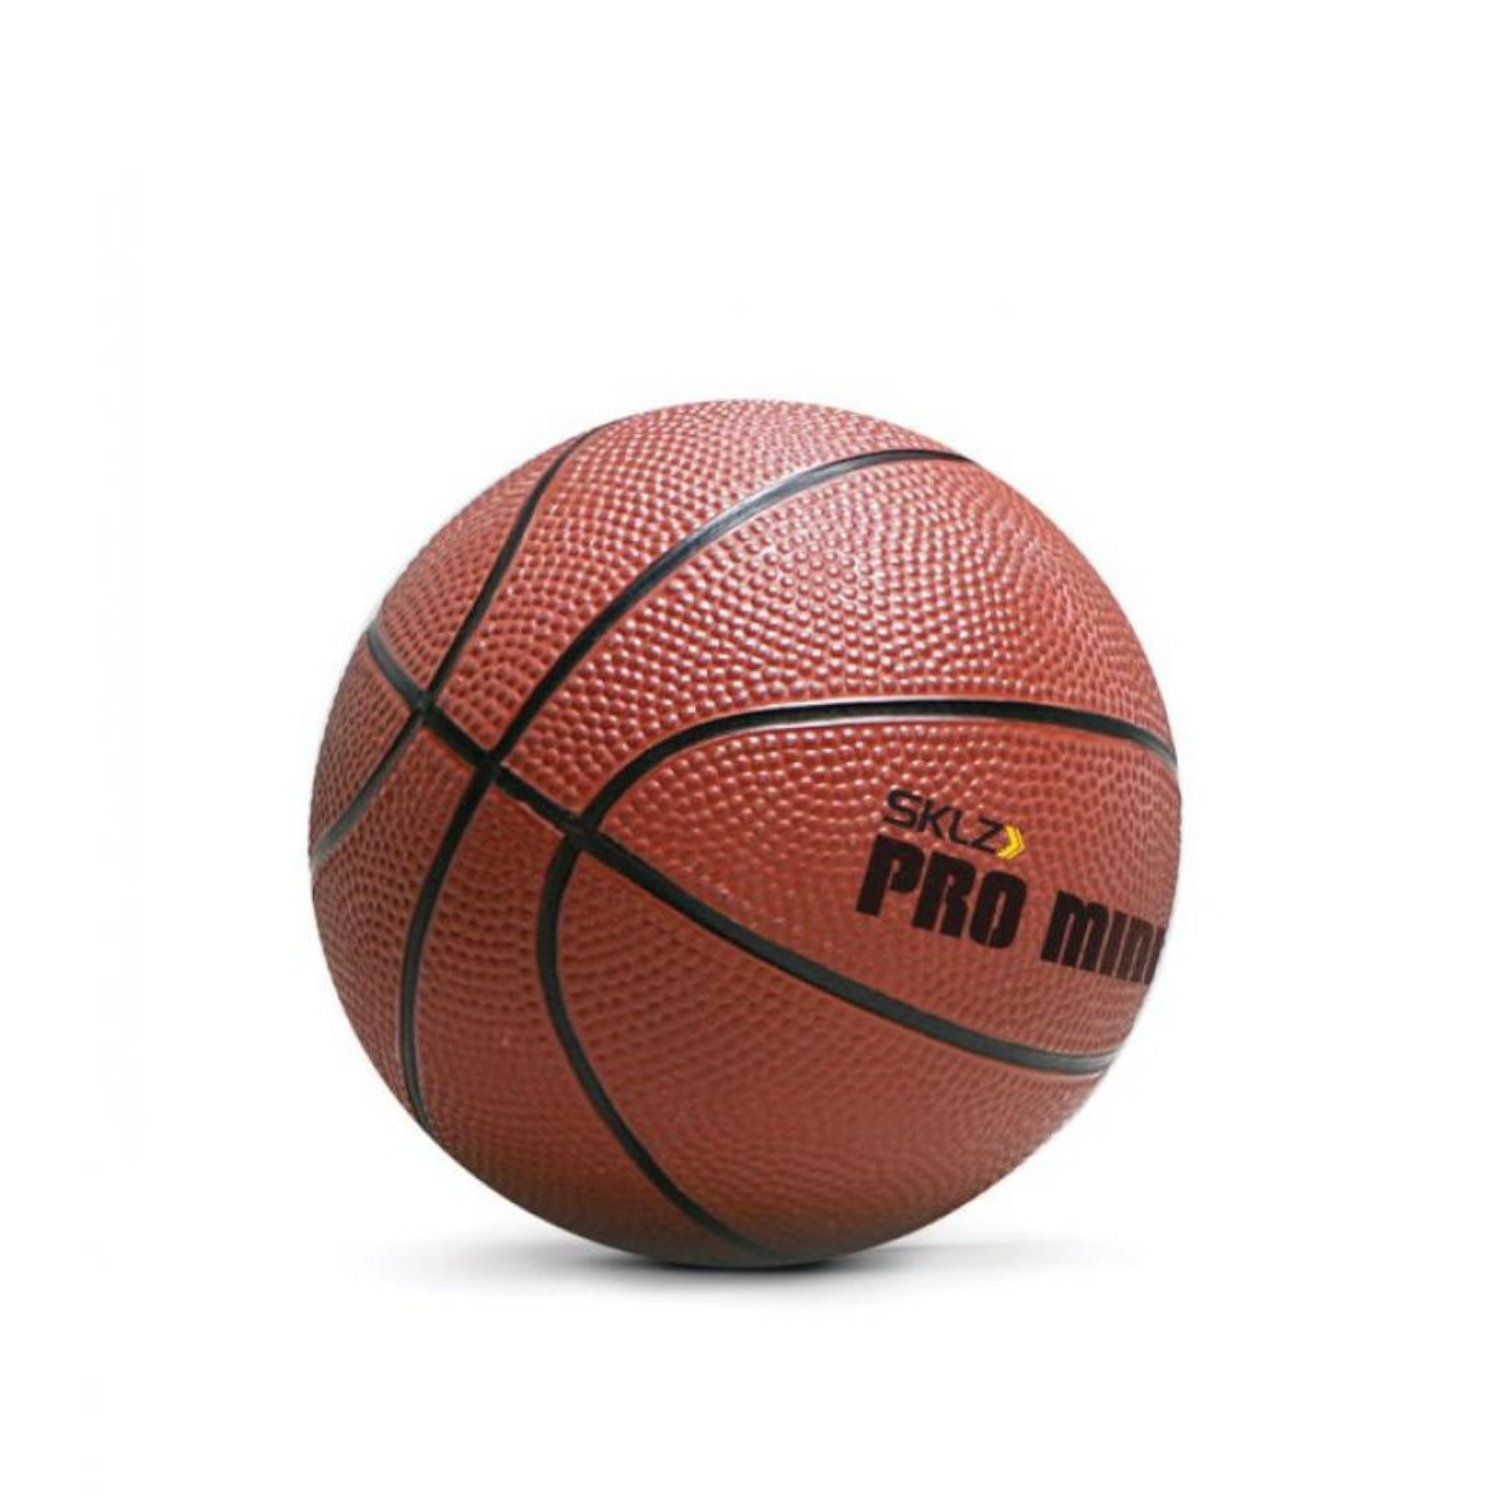 Игровой набор SKLZ баскетбольный Pro Mini Hoop XL - фото 2